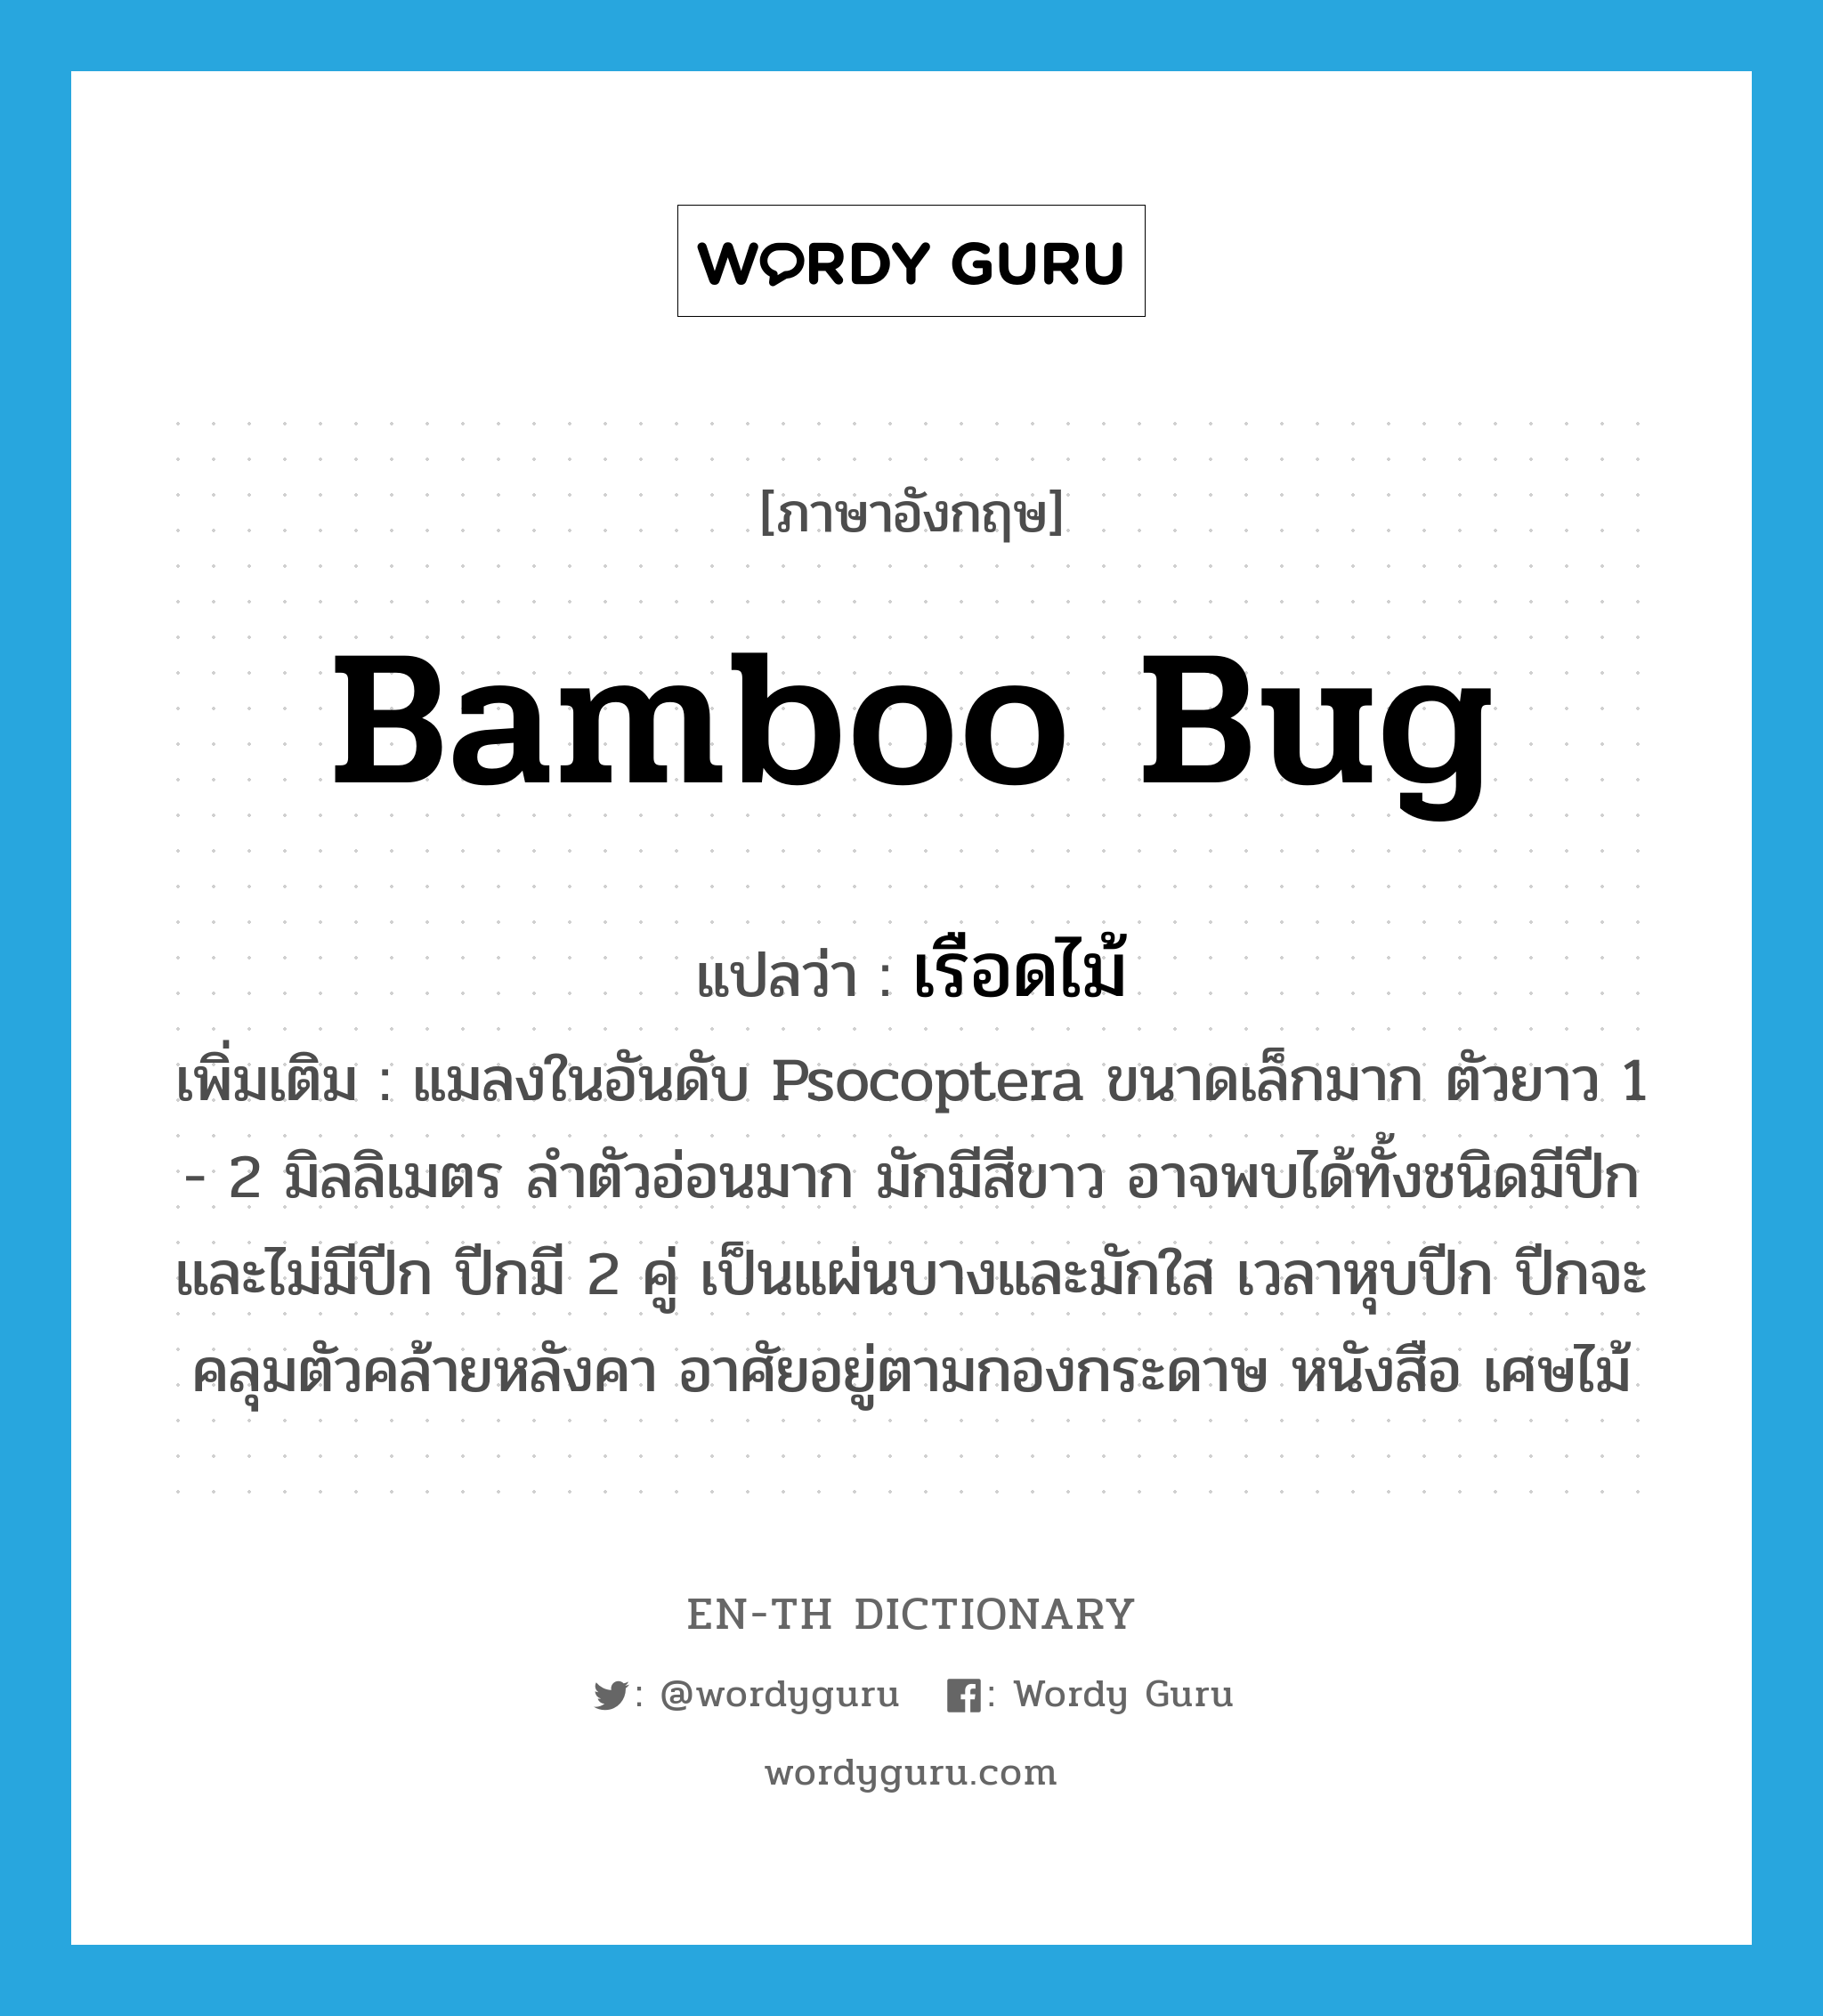 bamboo bug แปลว่า?, คำศัพท์ภาษาอังกฤษ bamboo bug แปลว่า เรือดไม้ ประเภท N เพิ่มเติม แมลงในอันดับ Psocoptera ขนาดเล็กมาก ตัวยาว 1 - 2 มิลลิเมตร ลำตัวอ่อนมาก มักมีสีขาว อาจพบได้ทั้งชนิดมีปีกและไม่มีปีก ปีกมี 2 คู่ เป็นแผ่นบางและมักใส เวลาหุบปีก ปีกจะคลุมตัวคล้ายหลังคา อาศัยอยู่ตามกองกระดาษ หนังสือ เศษไม้ หมวด N